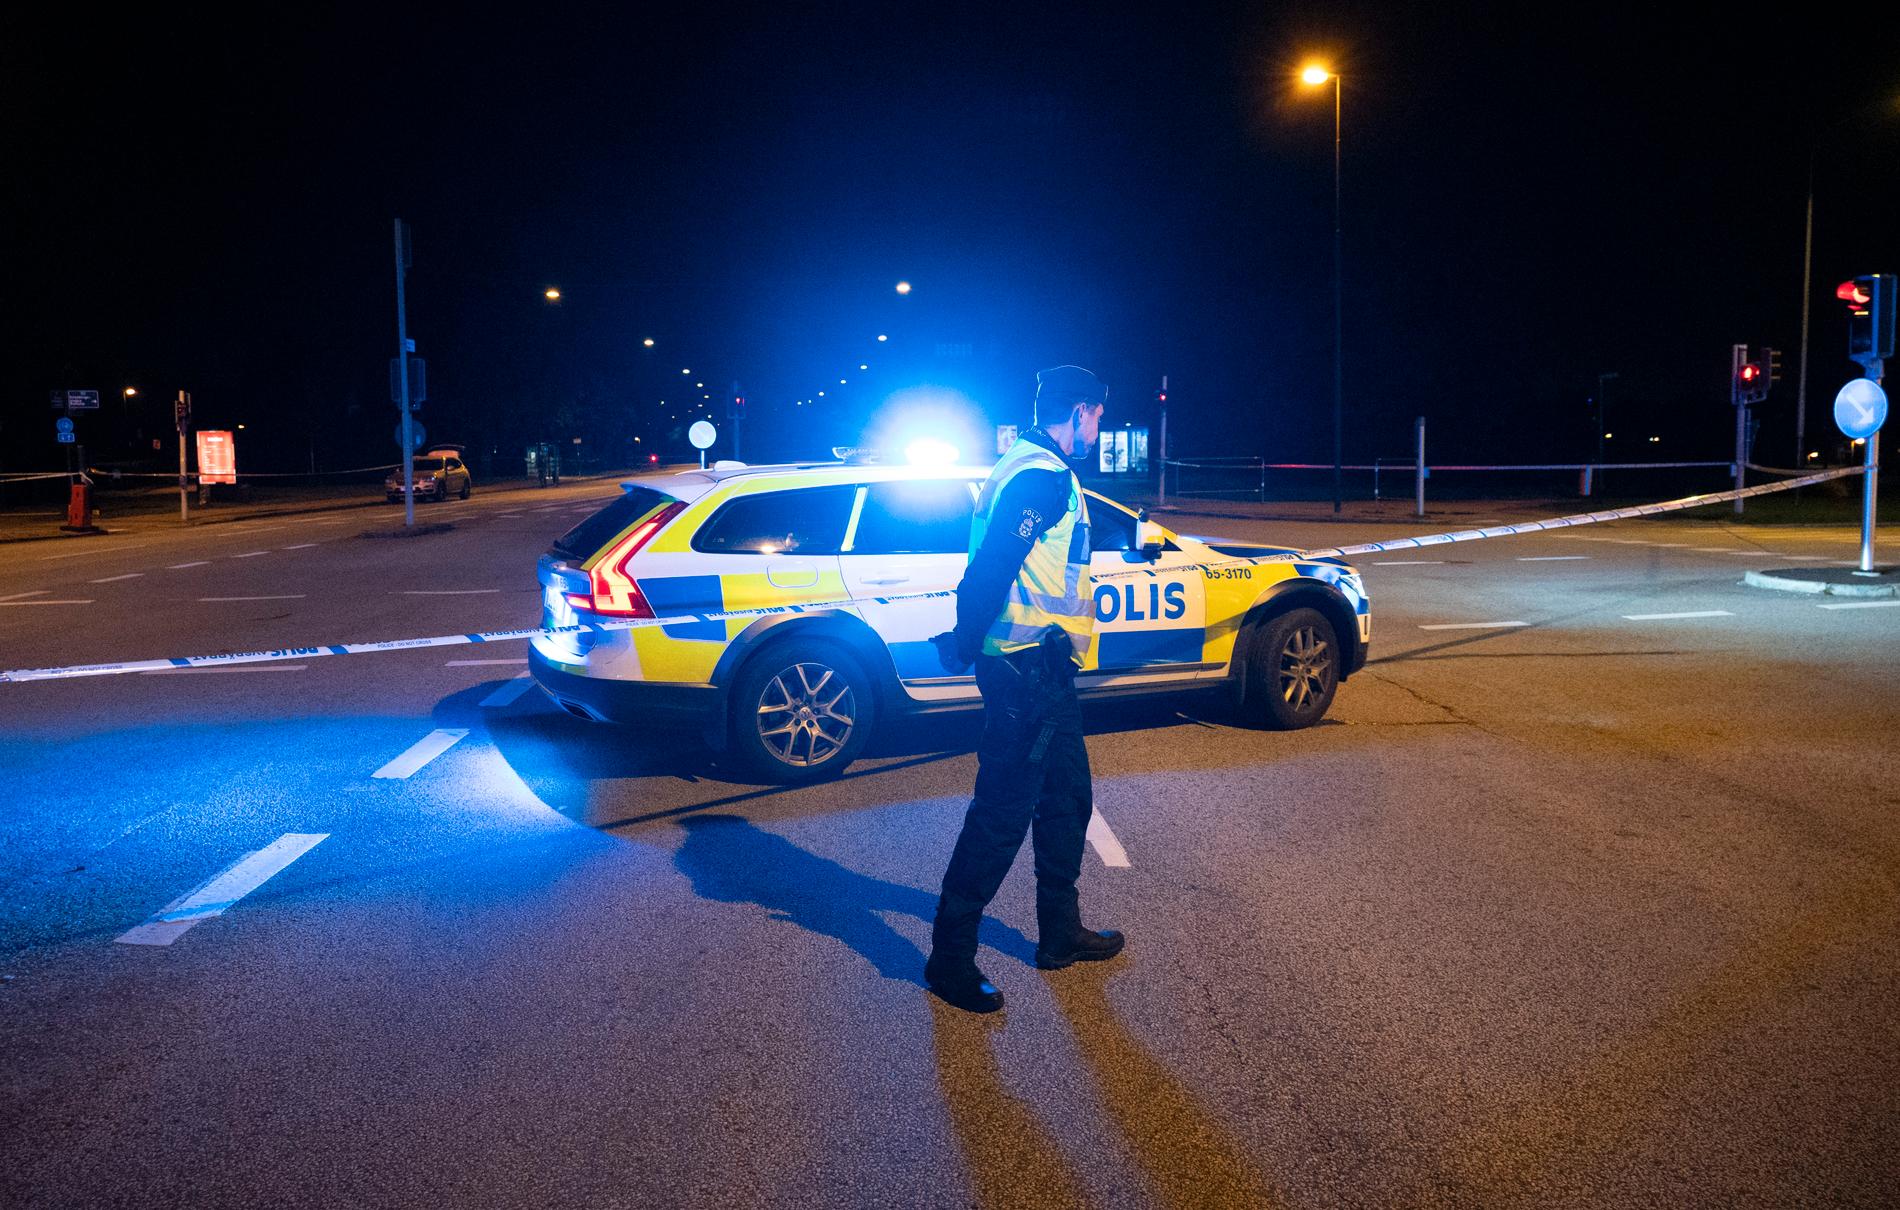 Polis spärrade av vid Sallerupsvägen i Malmö i höjd med Inre ringvägen natten till söndagen.